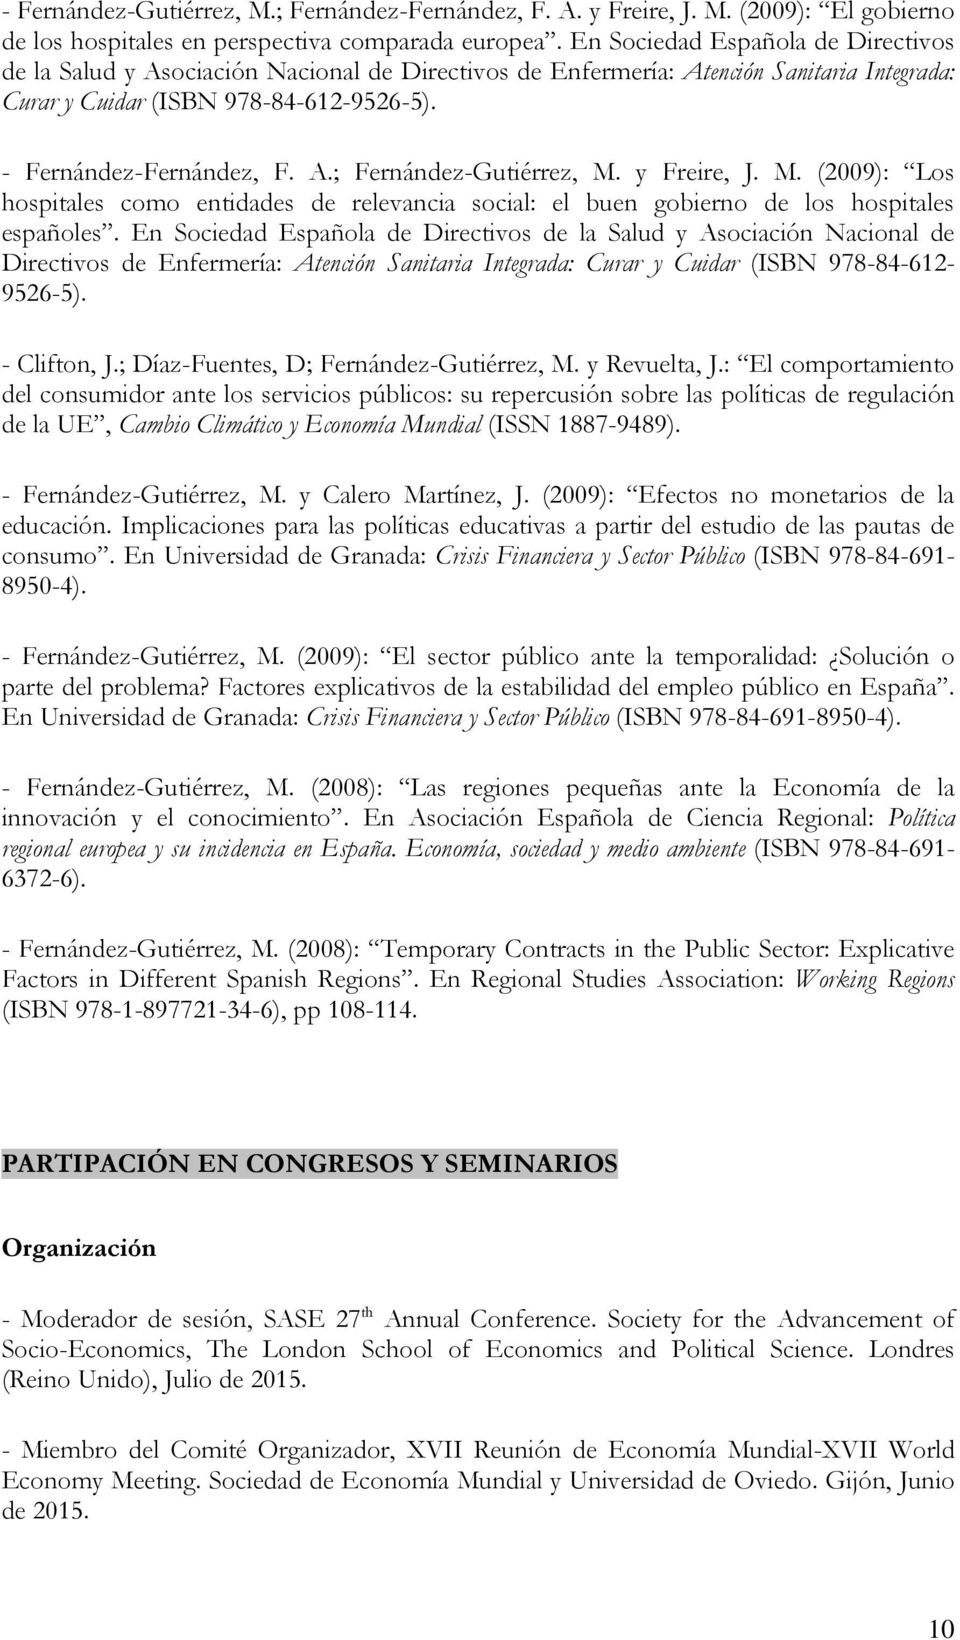 y Freire, J. M. (2009): Los hospitales como entidades de relevancia social: el buen gobierno de los hospitales españoles.